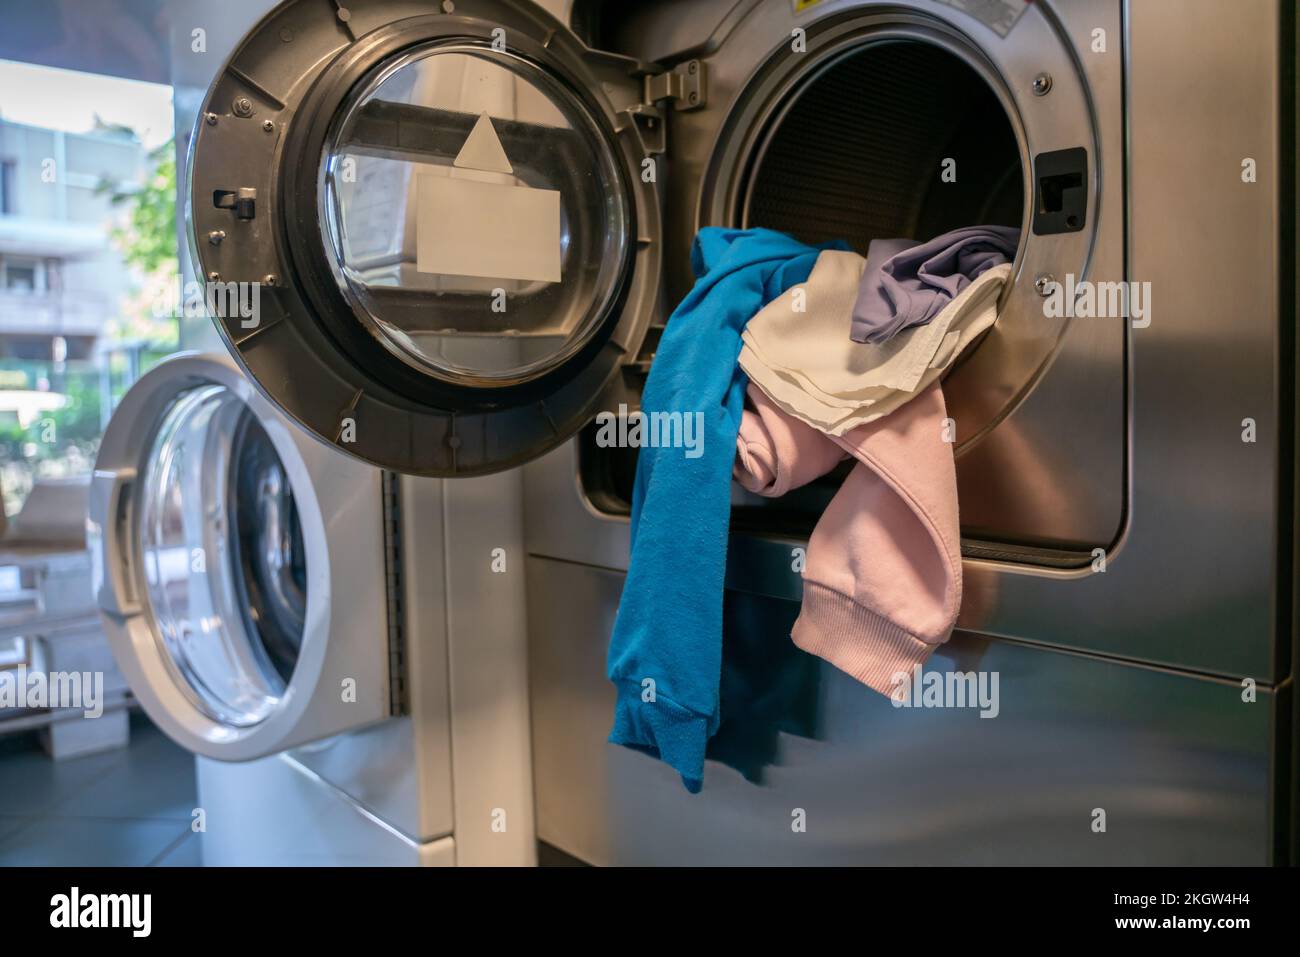 Self service laundry immagini e fotografie stock ad alta risoluzione - Alamy